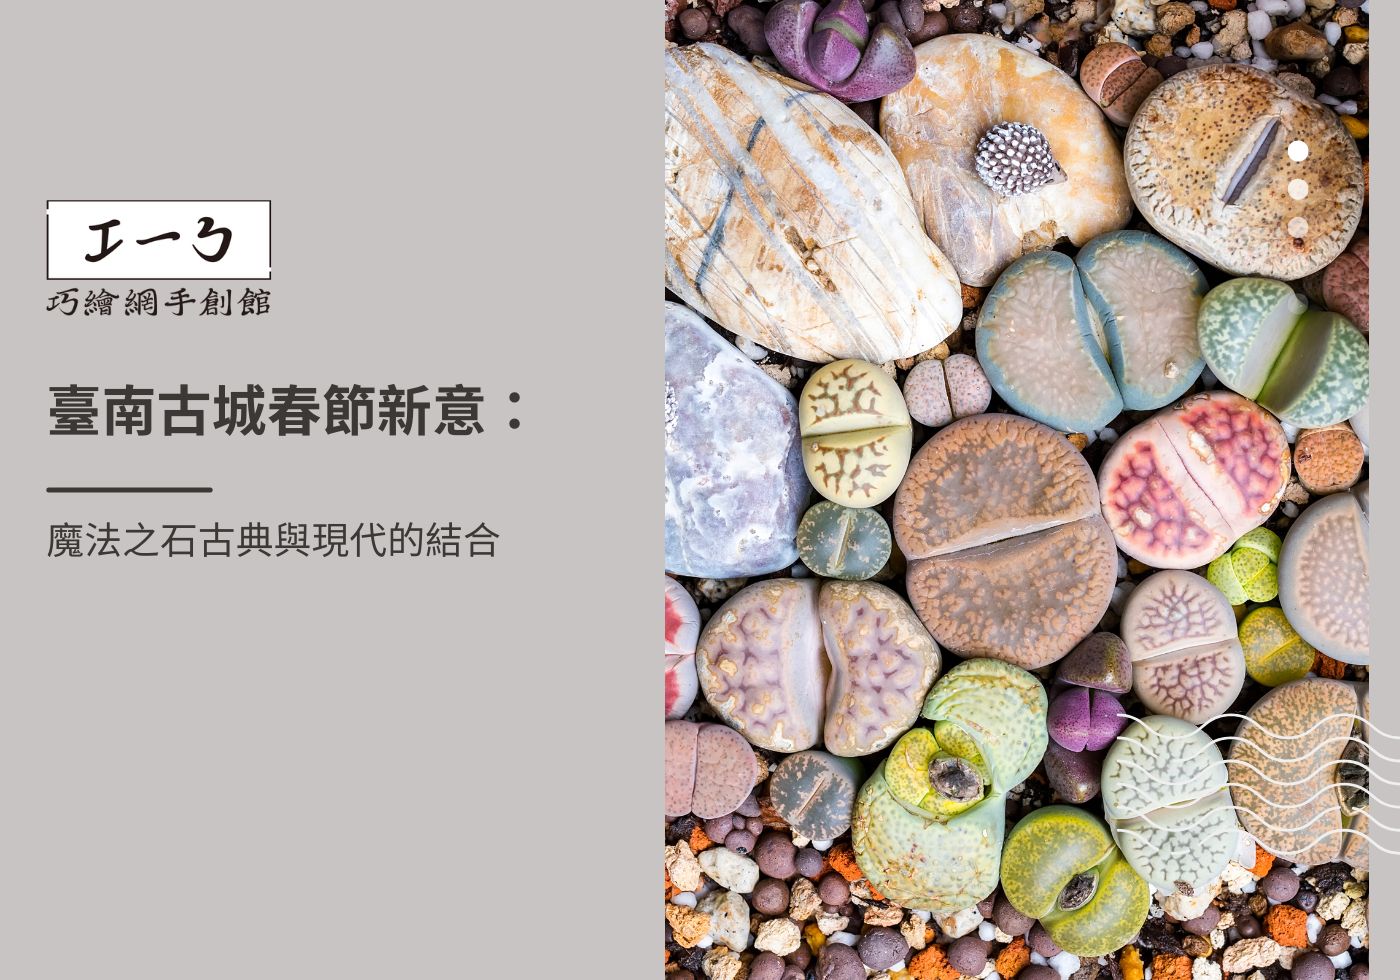 您目前正在查看 臺南古城春節新意：魔法之石古典與現代的結合